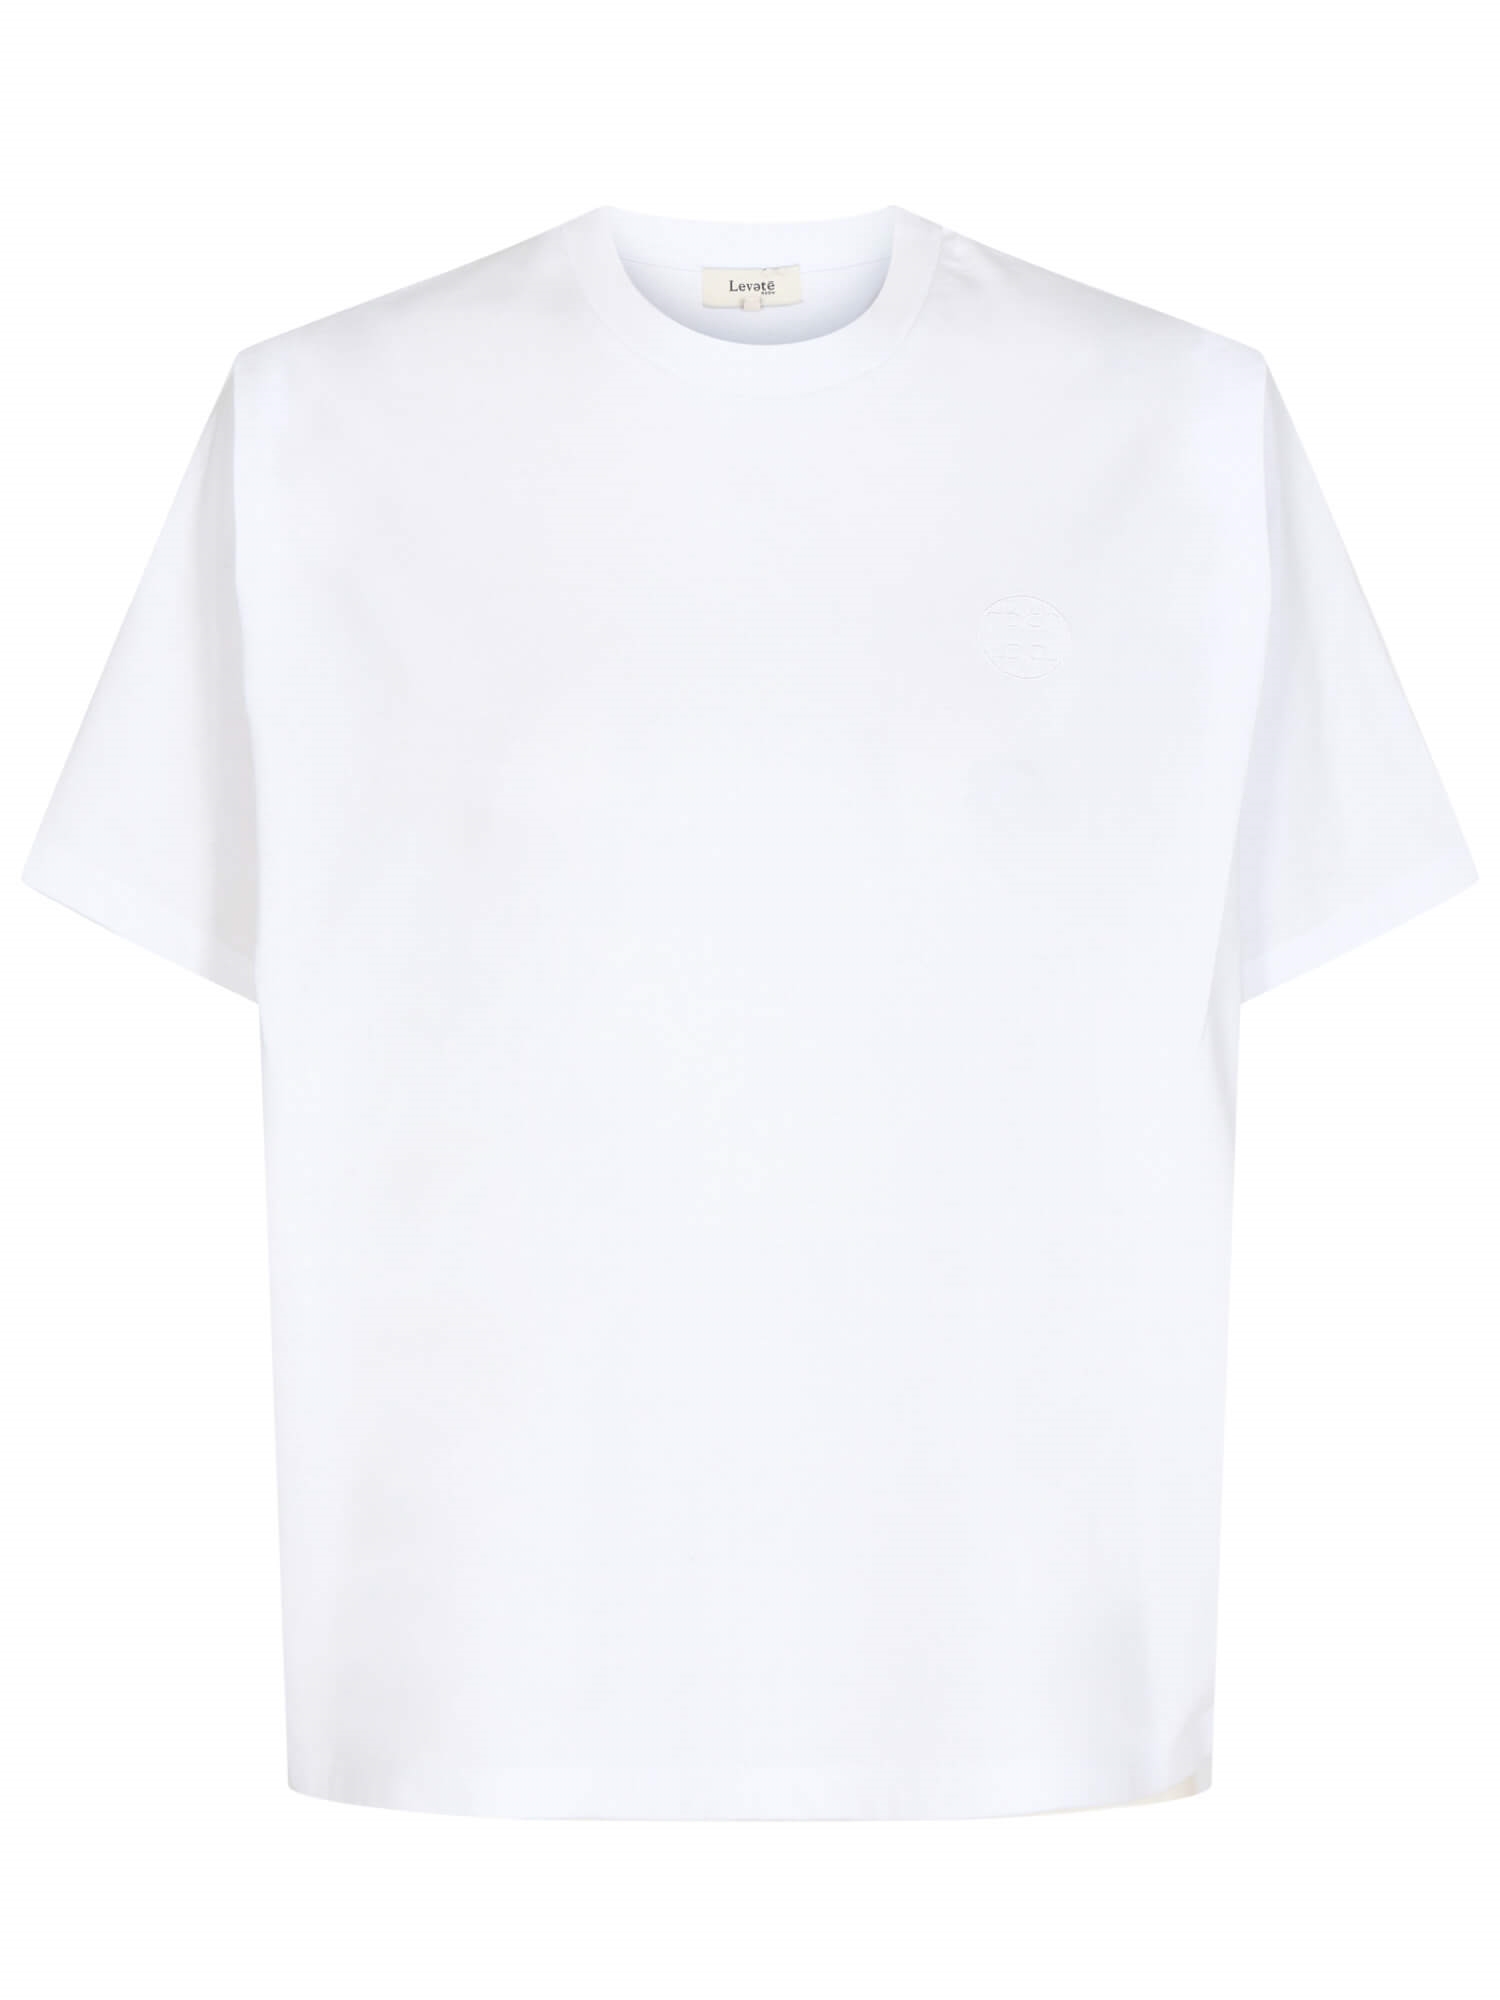 indbildskhed mangel Kontrovers Levete Room LR-ISOL 11 T-shirt, Hvid ⇒ Køb den her